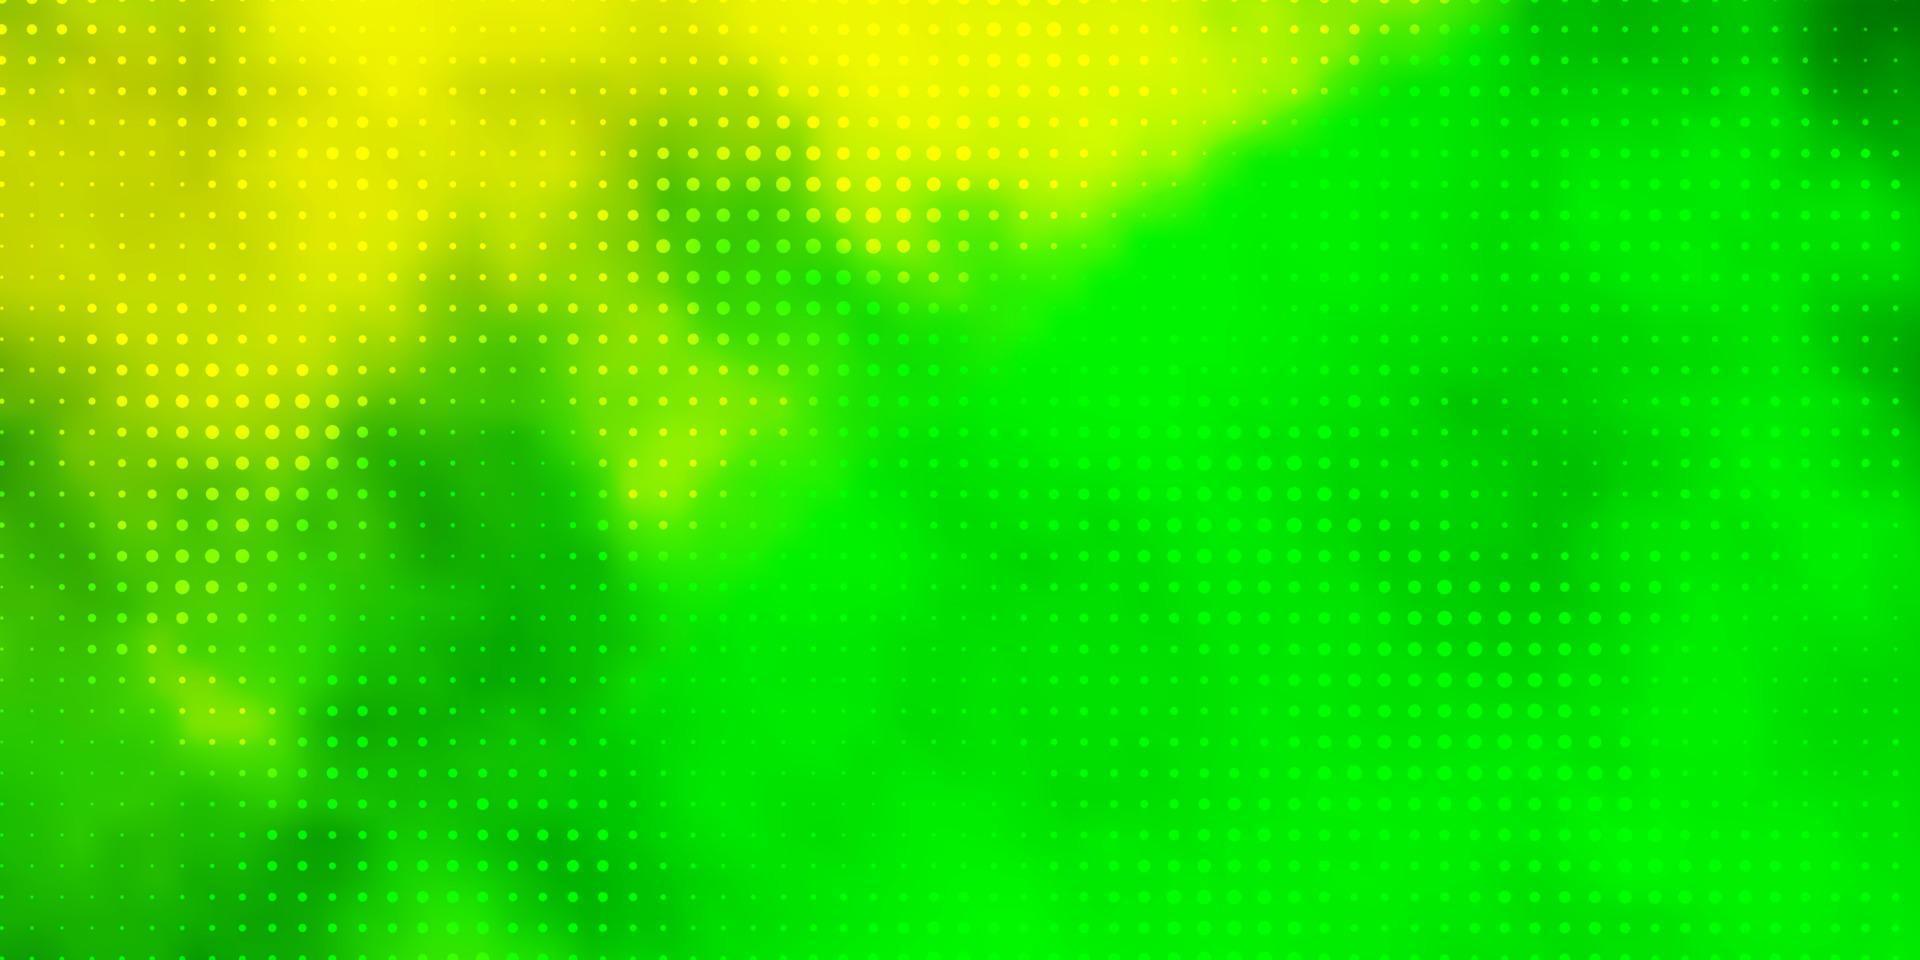 sfondo vettoriale verde chiaro, giallo con macchie.